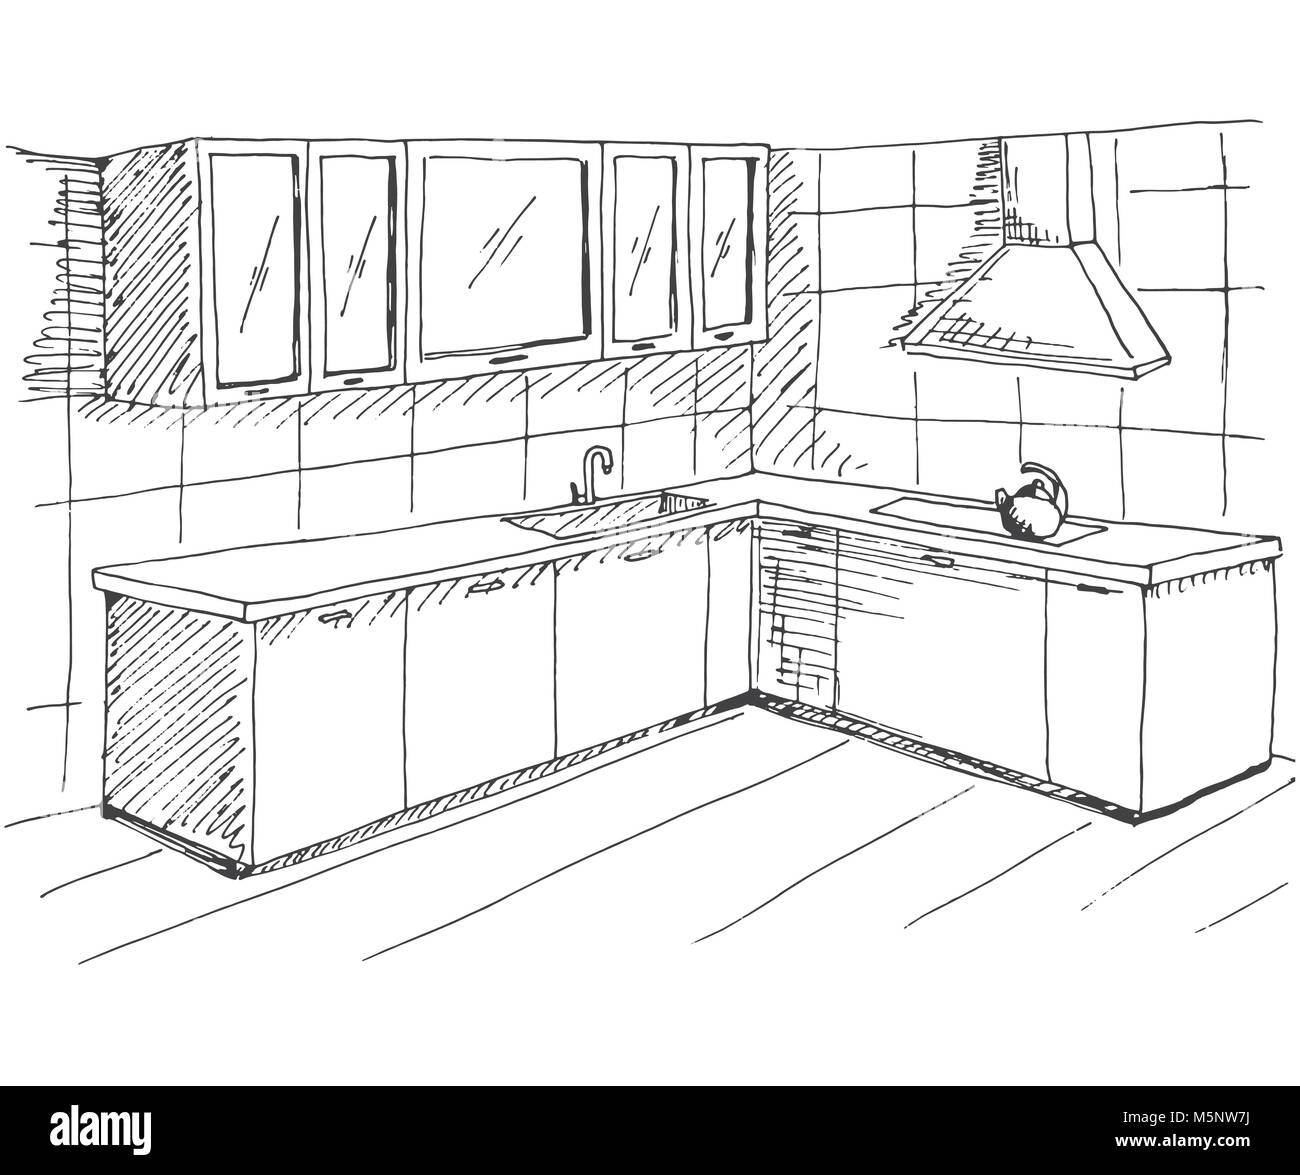 Interior hand drawn perspective kitchen Banque d'images noir et blanc -  Alamy